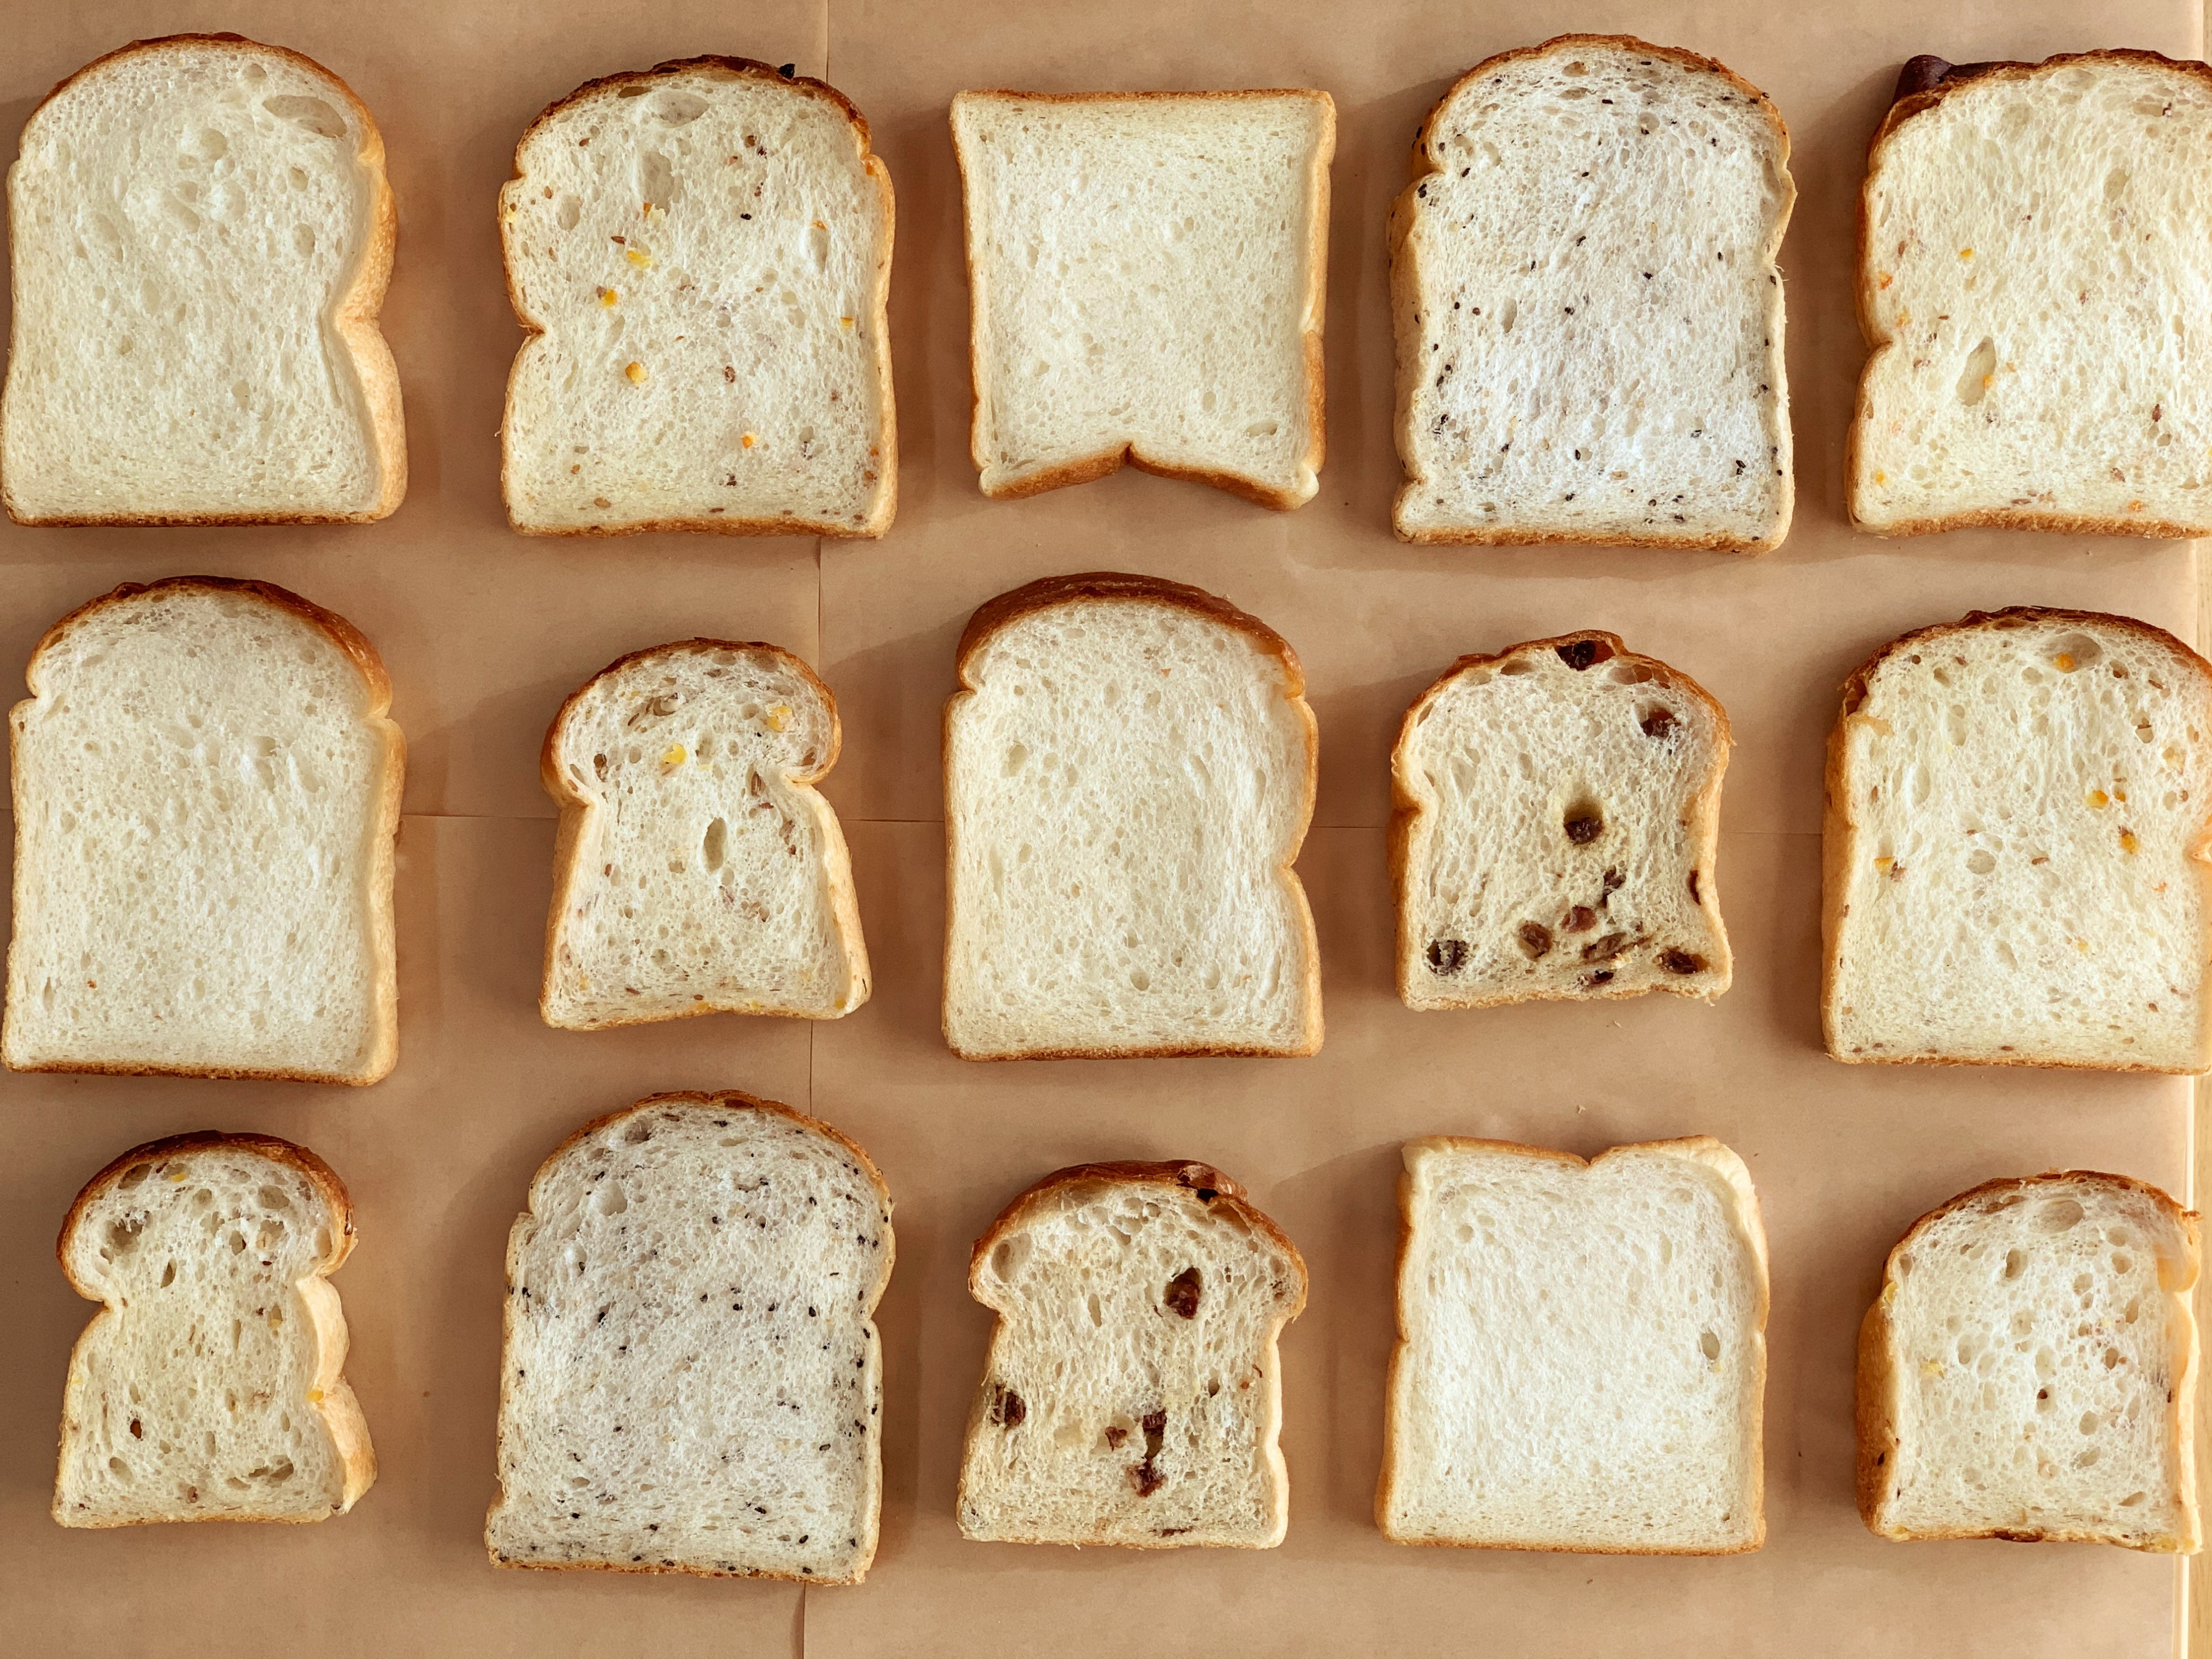 並んだ食パン